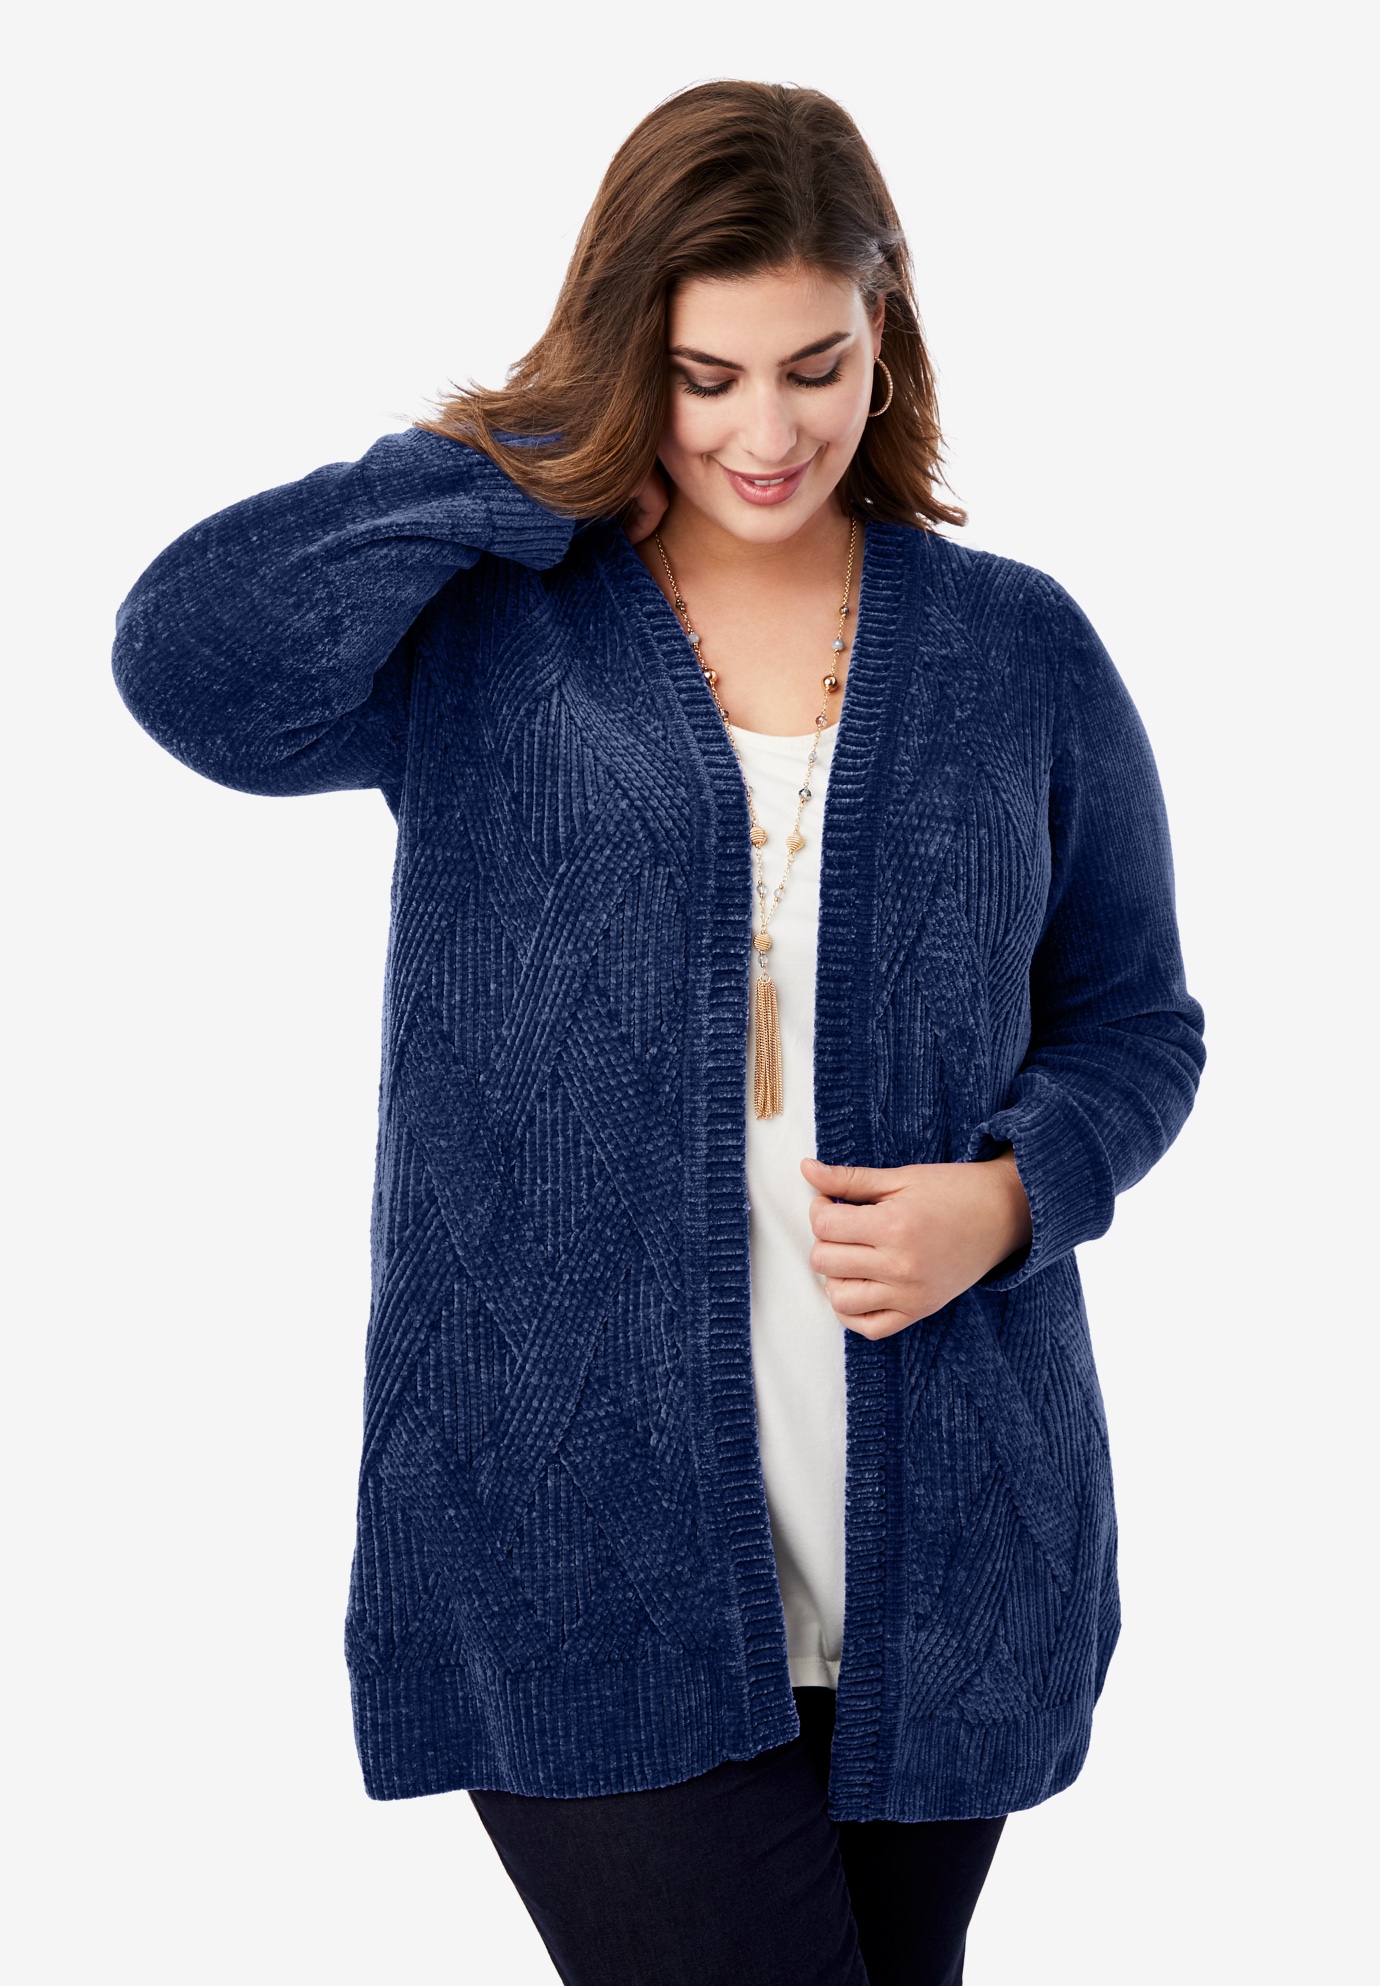 Roaman's Women's Plus Size Fine Gauge Duster Cardigan Sweater